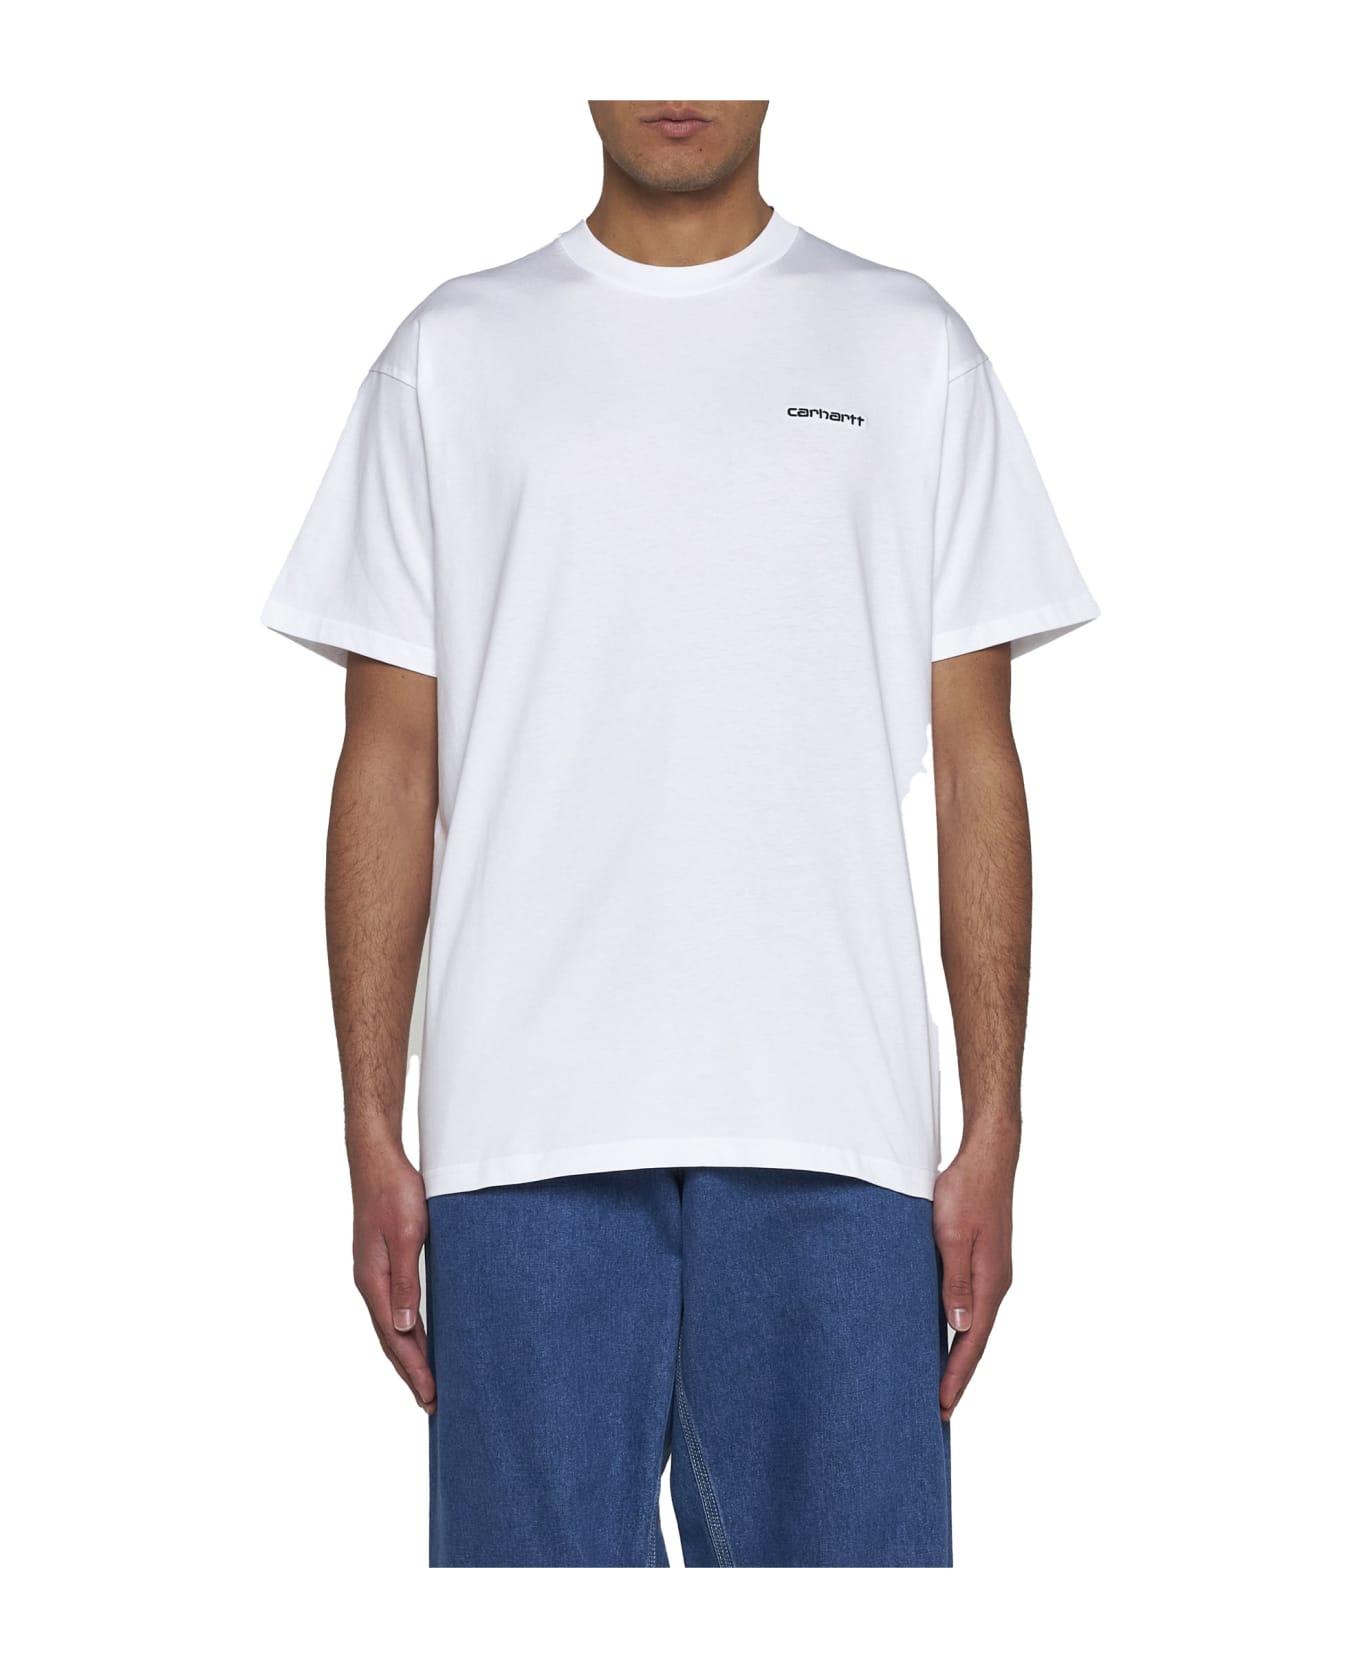 Carhartt T-Shirt - White